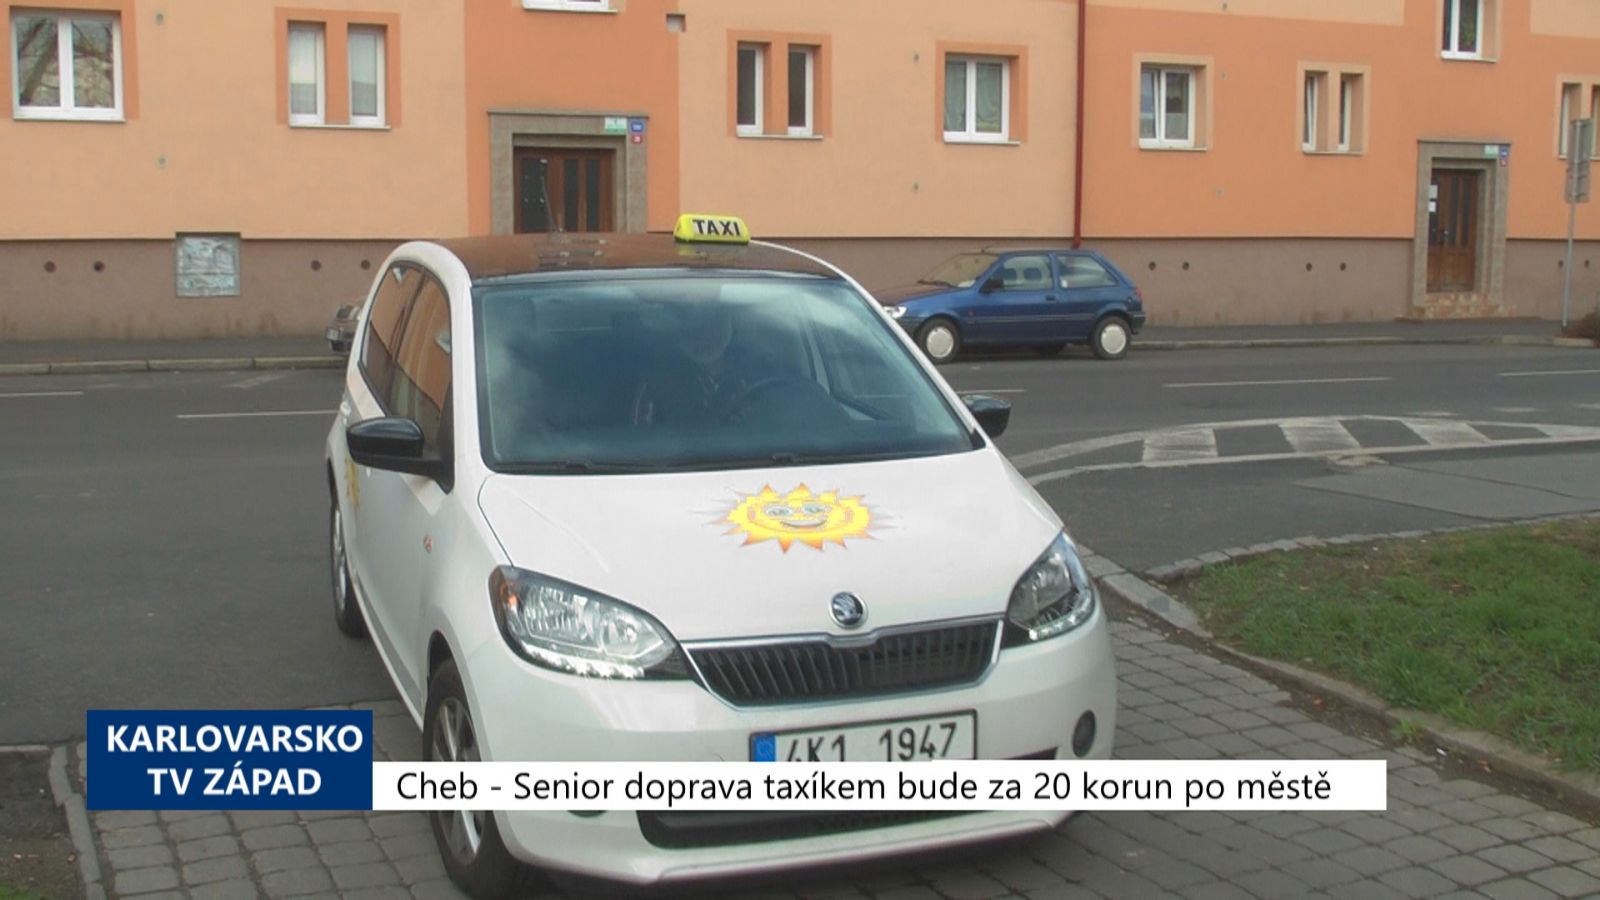 Cheb: Senior doprava taxíkem bude za 20 korun po městě (TV Západ)